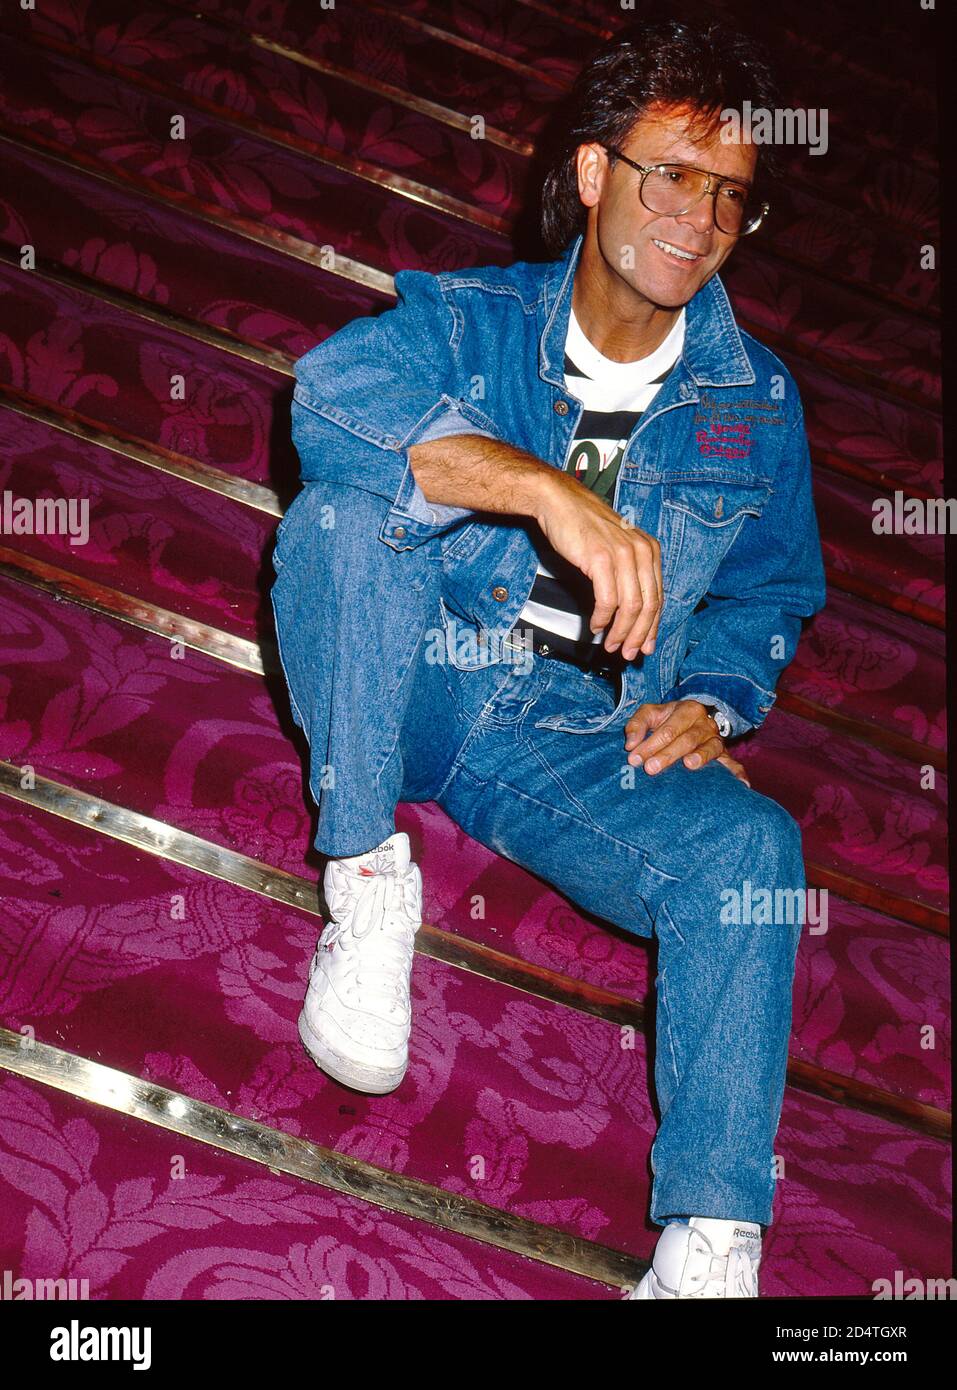 Cliff Richard celebra 30 años en el mundo del espectáculo en 1988 Foto de stock